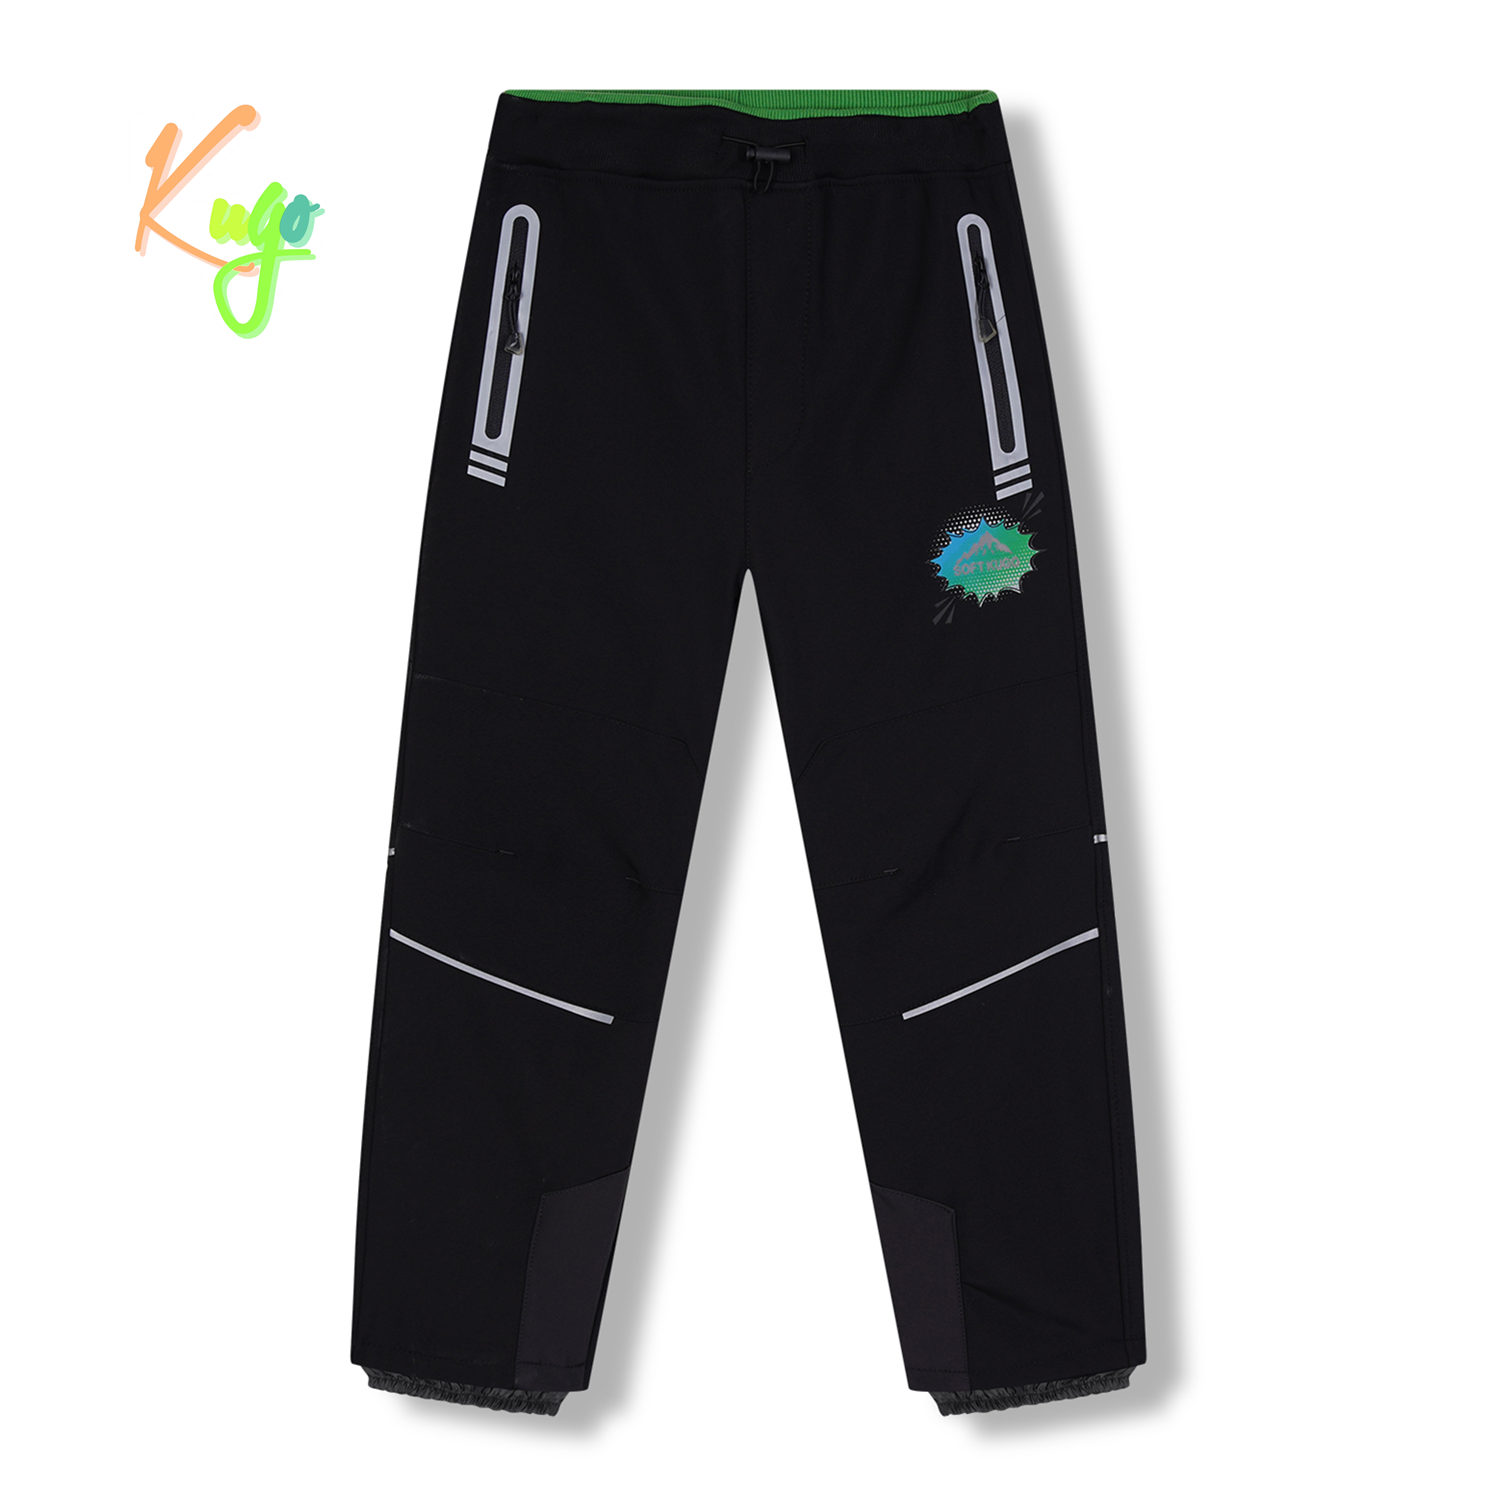 Chlapecké softshellové kalhoty, zateplené - KUGO HK5622, celočerná Barva: Černá, Velikost: 116